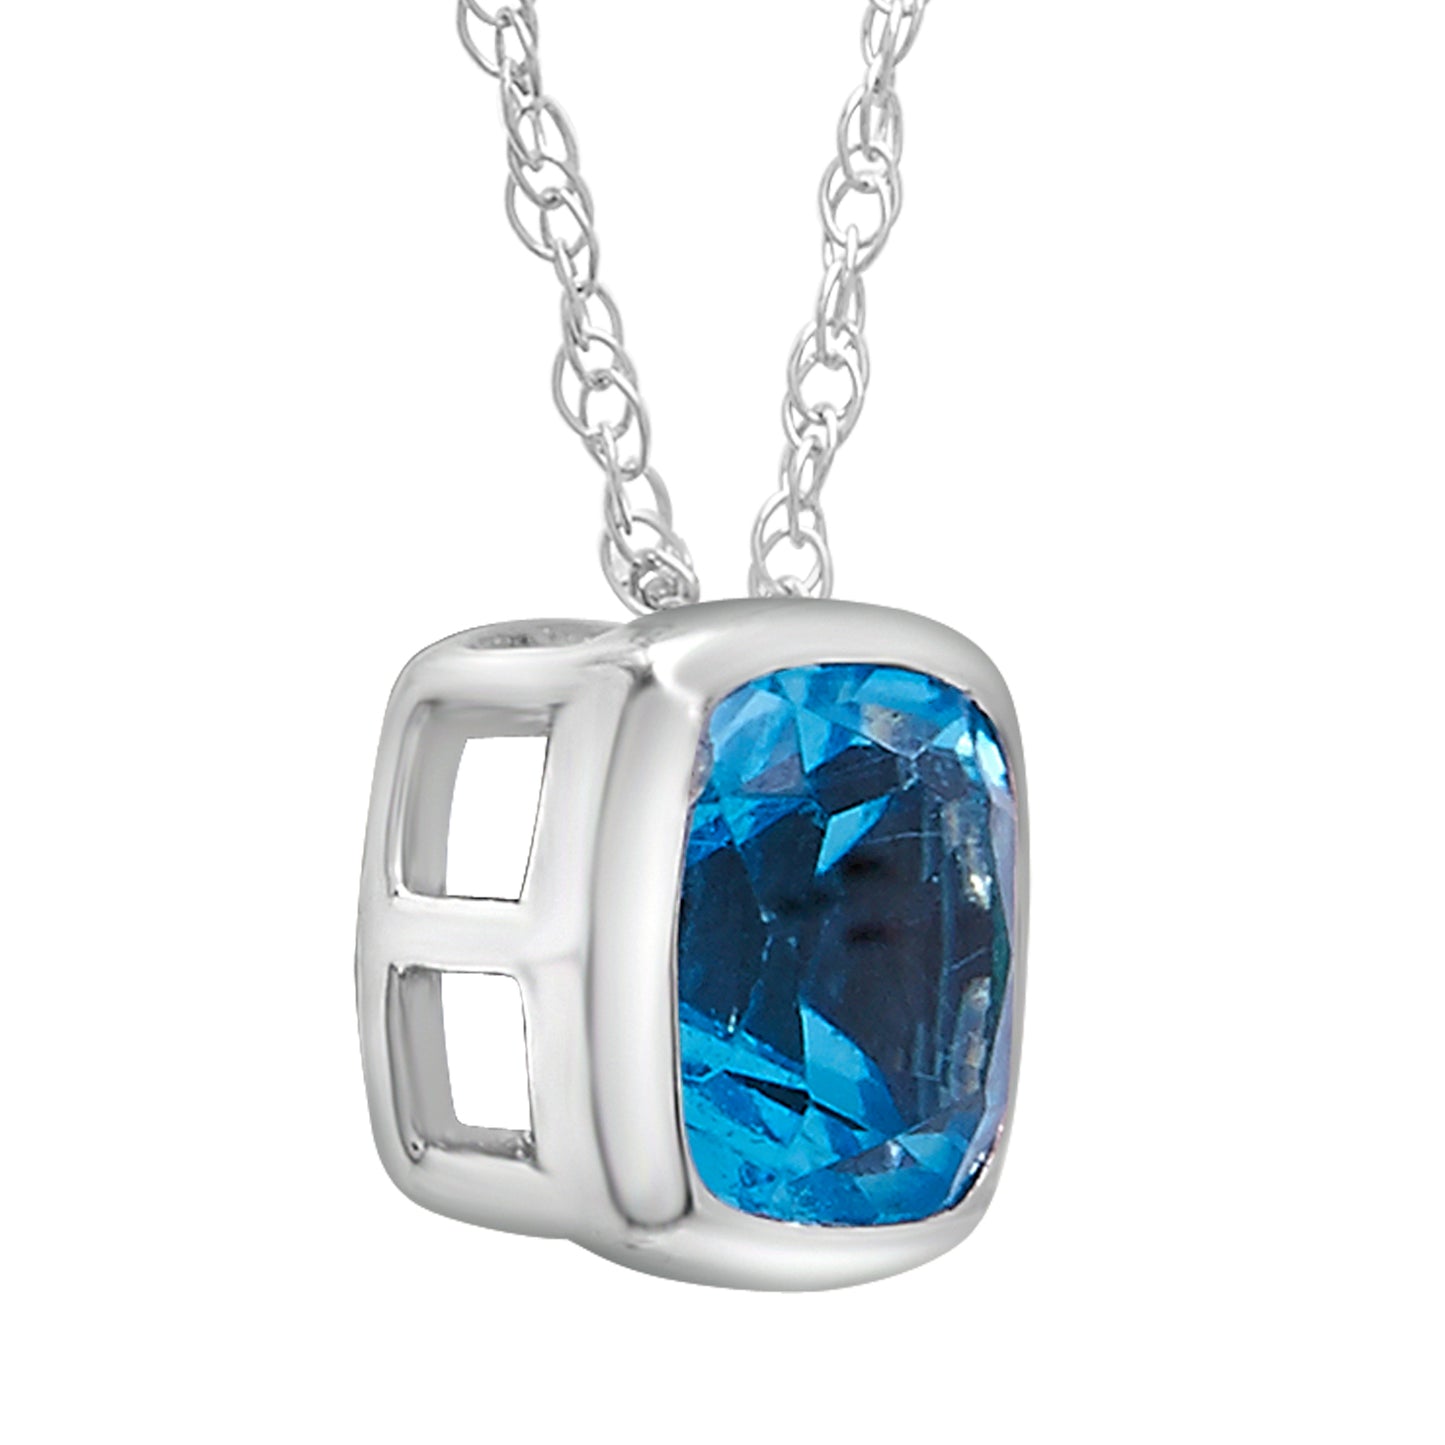 Blue topaz CC bezel set 10kw pendant